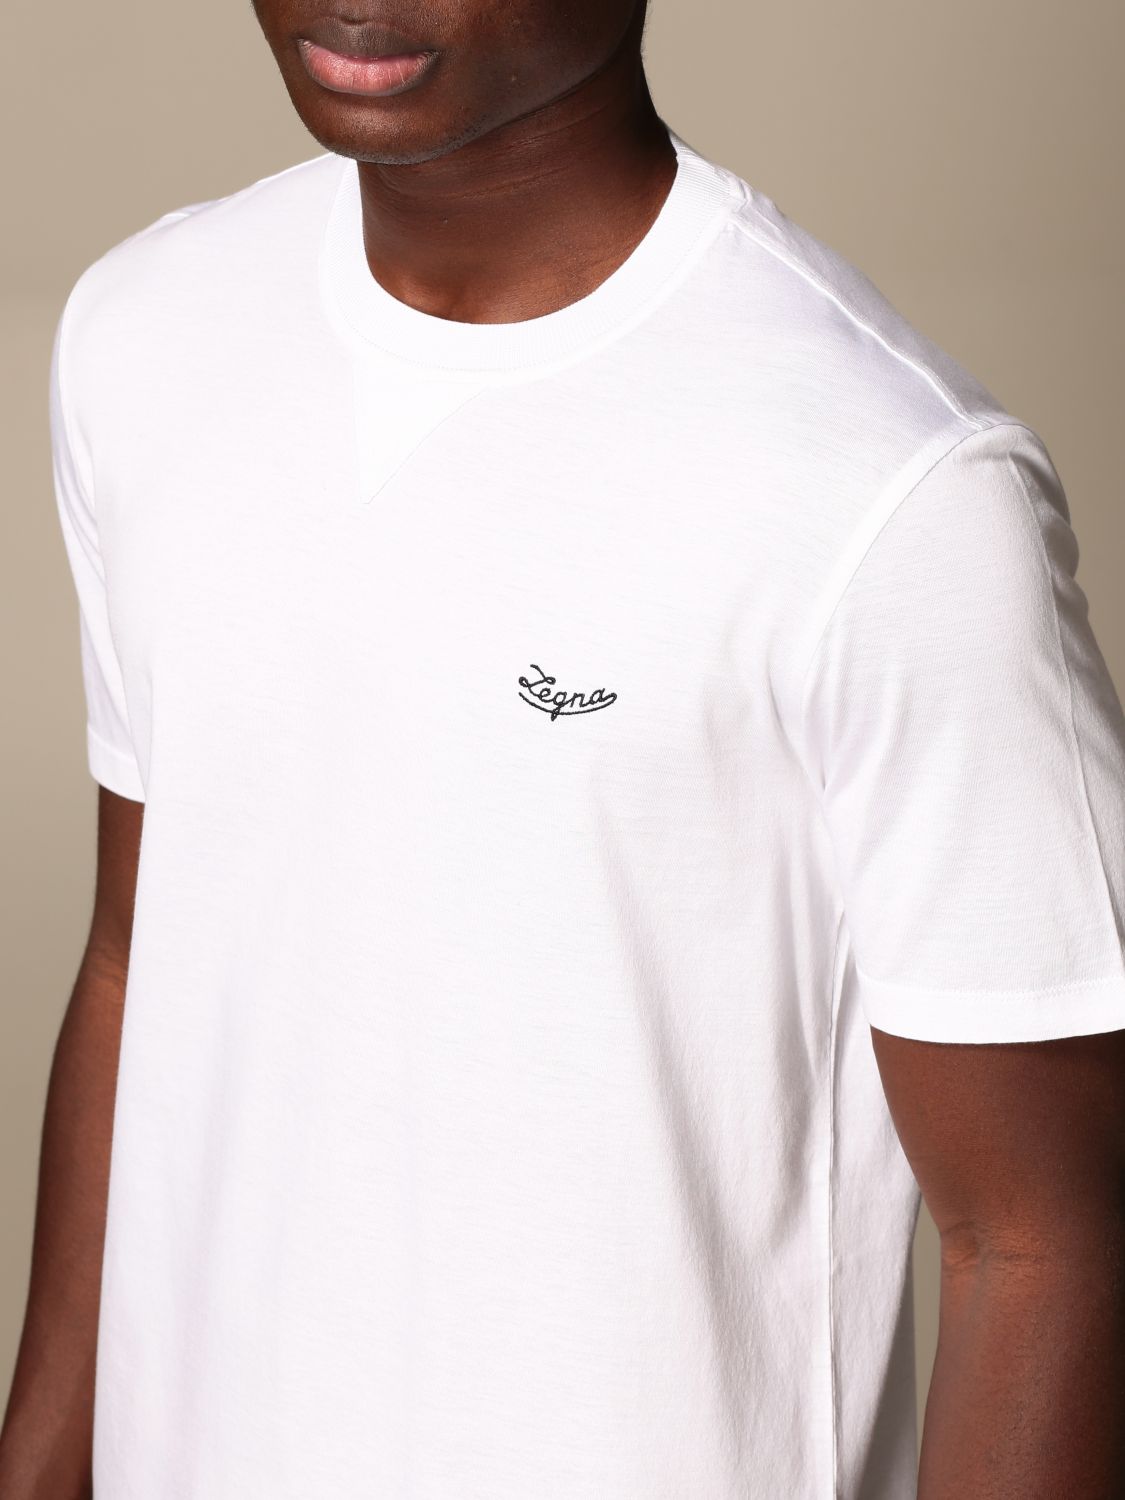 Zegna Outlet: Ermenegildo T-shirt in pure cotton - White | T-Shirt ...